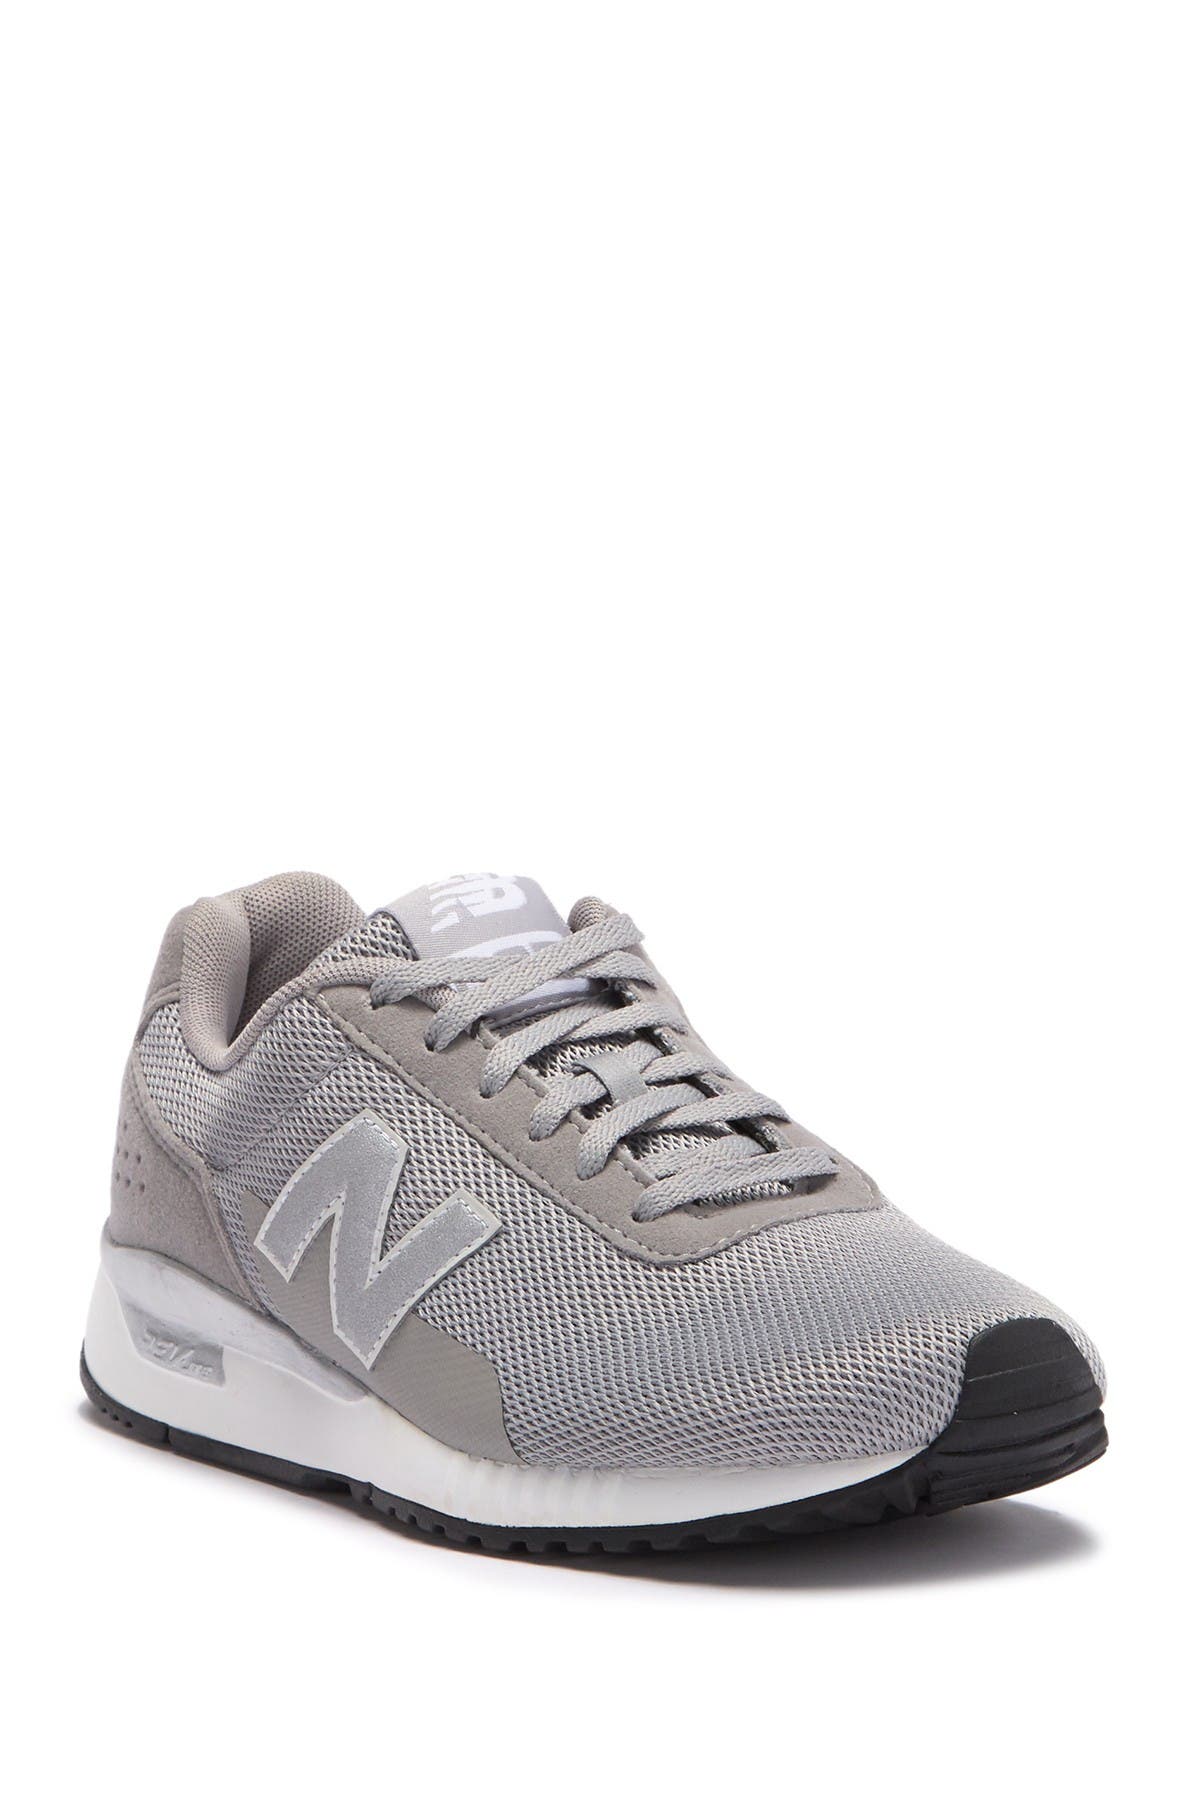 New Balance | 5v2 Sneaker | Nordstrom Rack